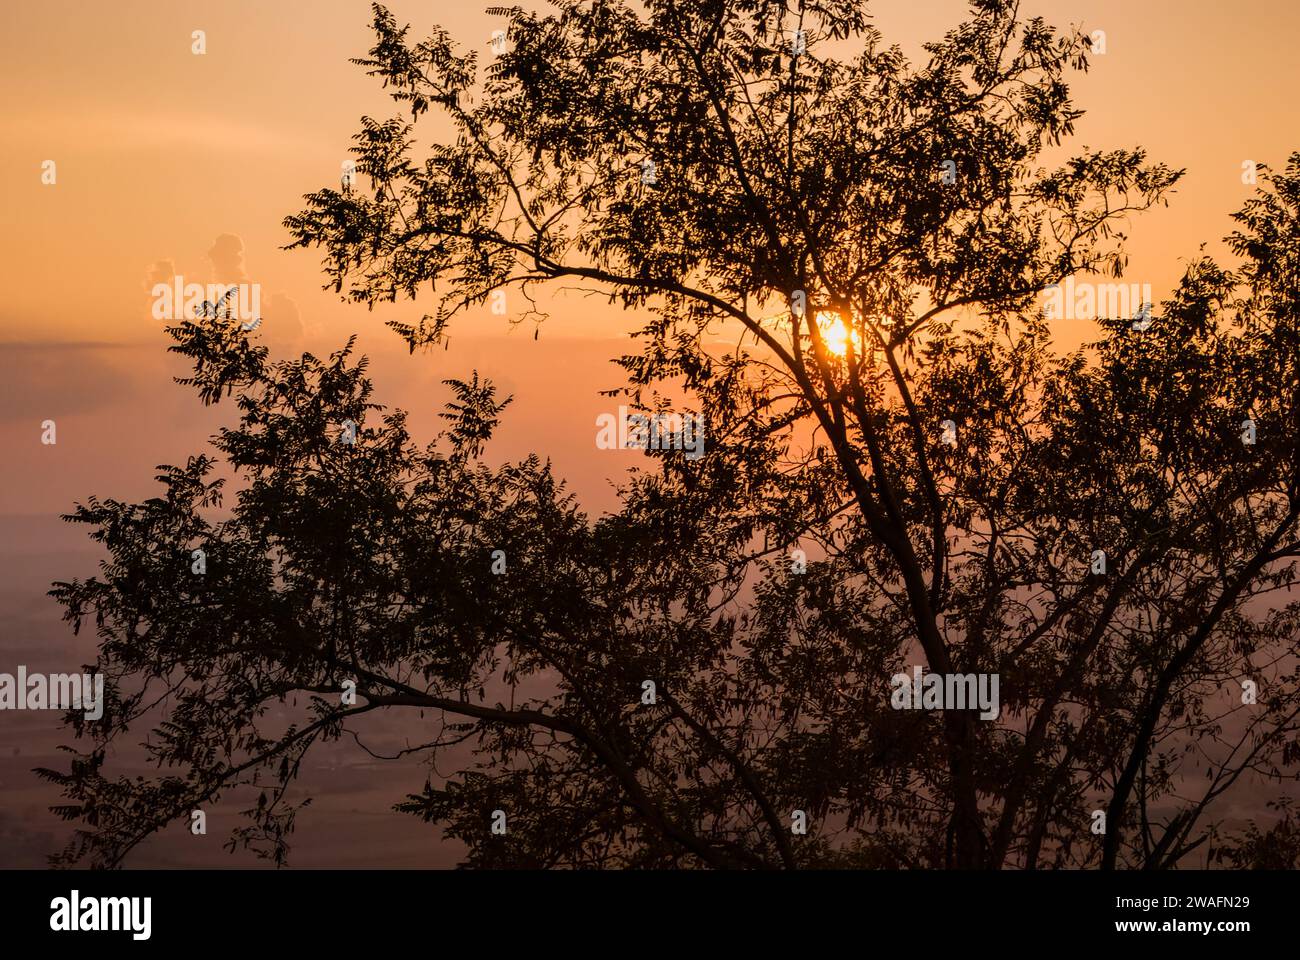 Der bezaubernde Anblick eines Baumes, der in den warmen Farbtönen des Sonnenuntergangs getaucht ist Stockfoto